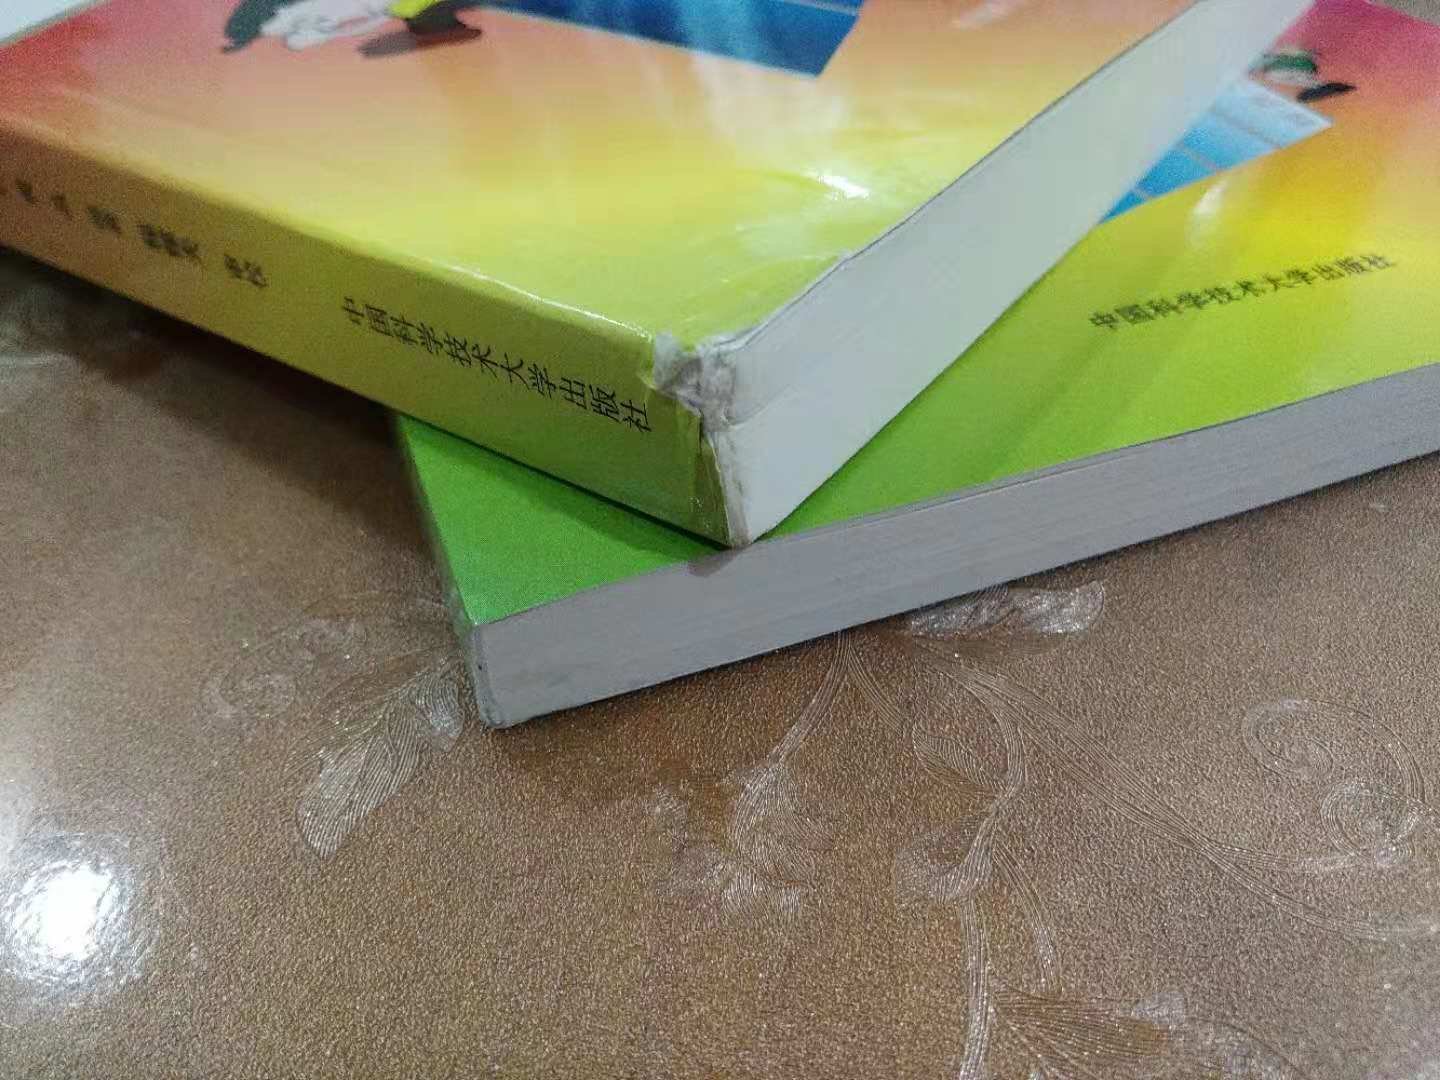 自营的速度杠杠滴，只是包装是否简陋了，外面袋子有点破了，里面一本书两头都破了，算了，反正不影响使用。